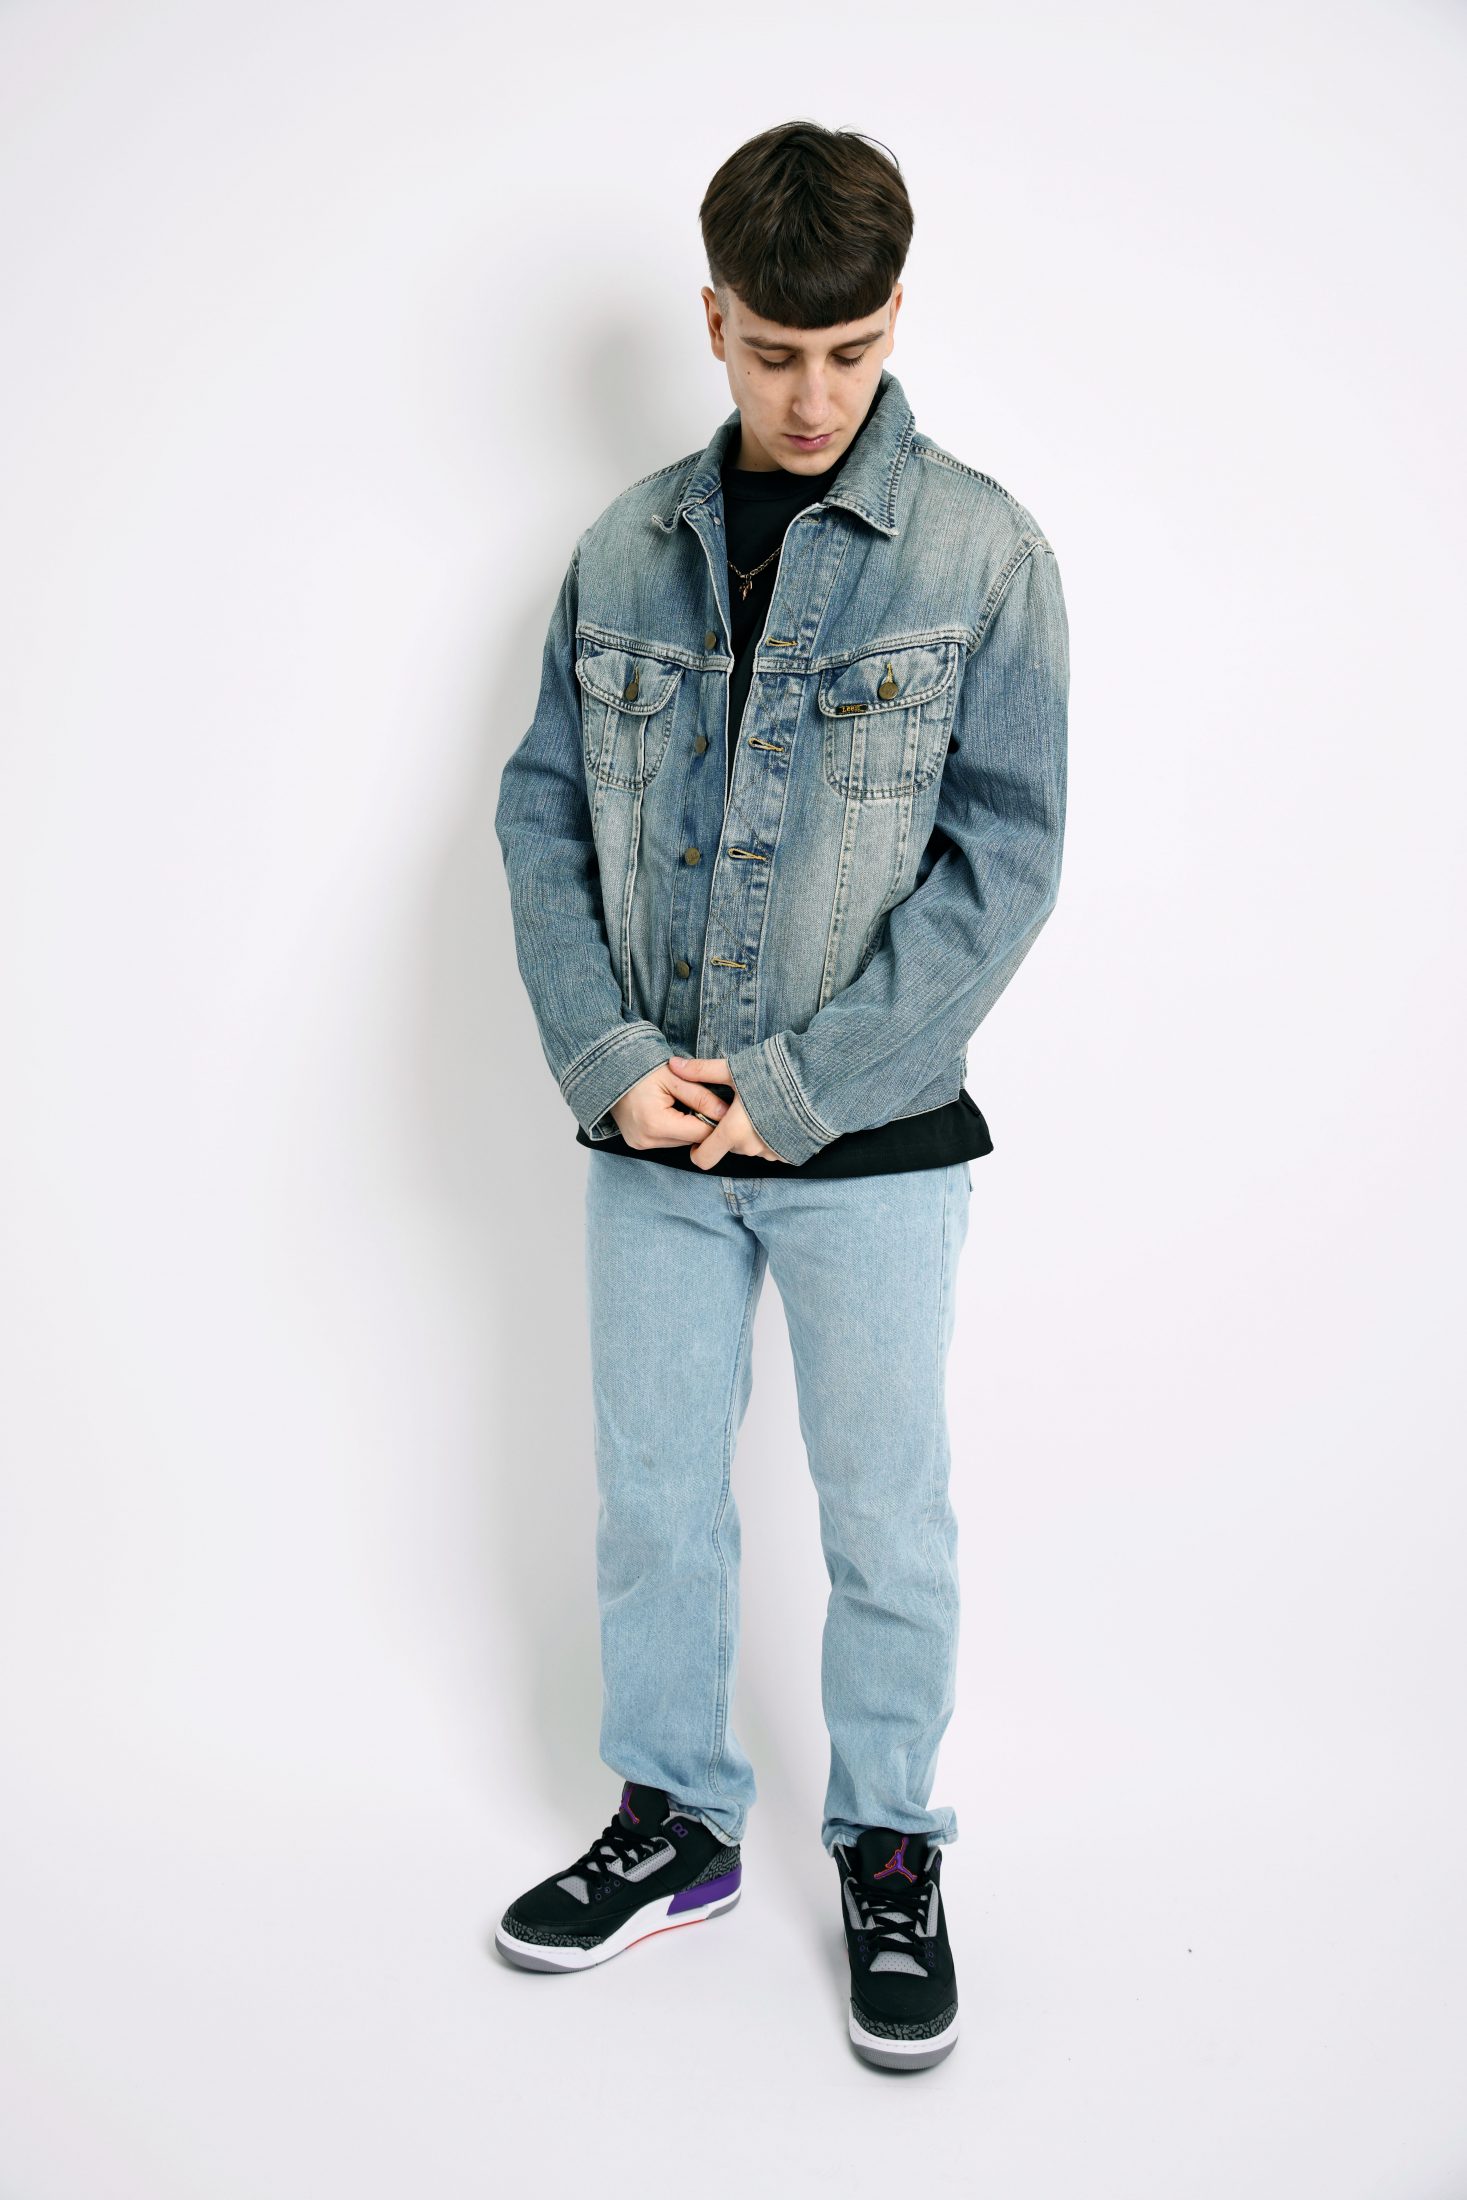 LEE denim jacket 80s | Retro 90s fashion men | 80s outfit clothes